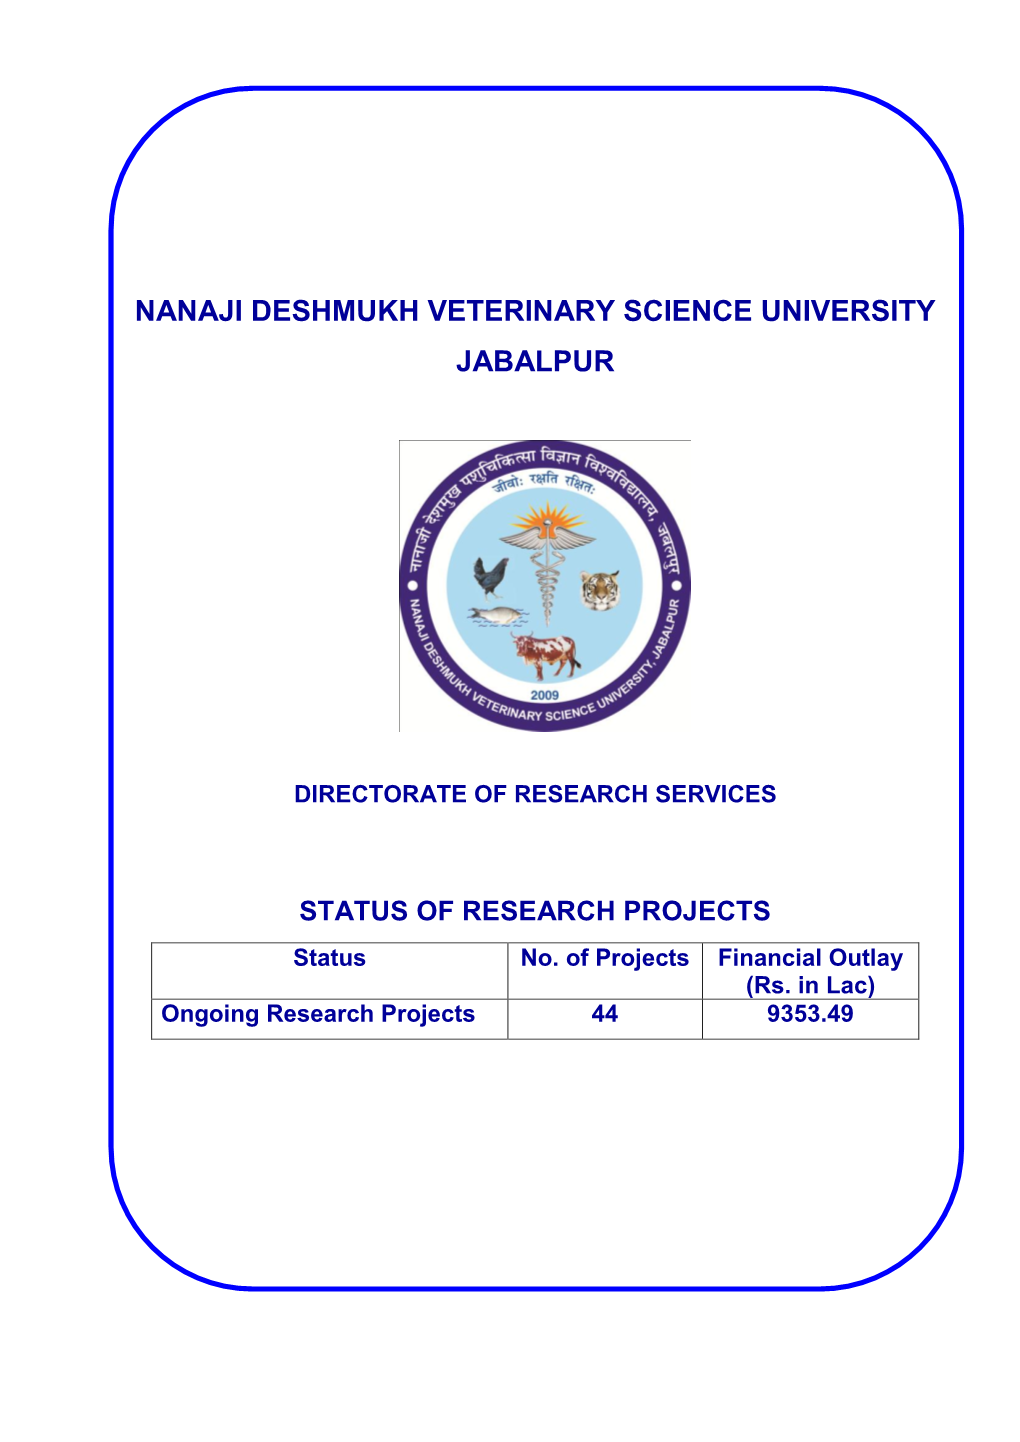 Nanaji Deshmukh Veterinary Science University Jabalpur